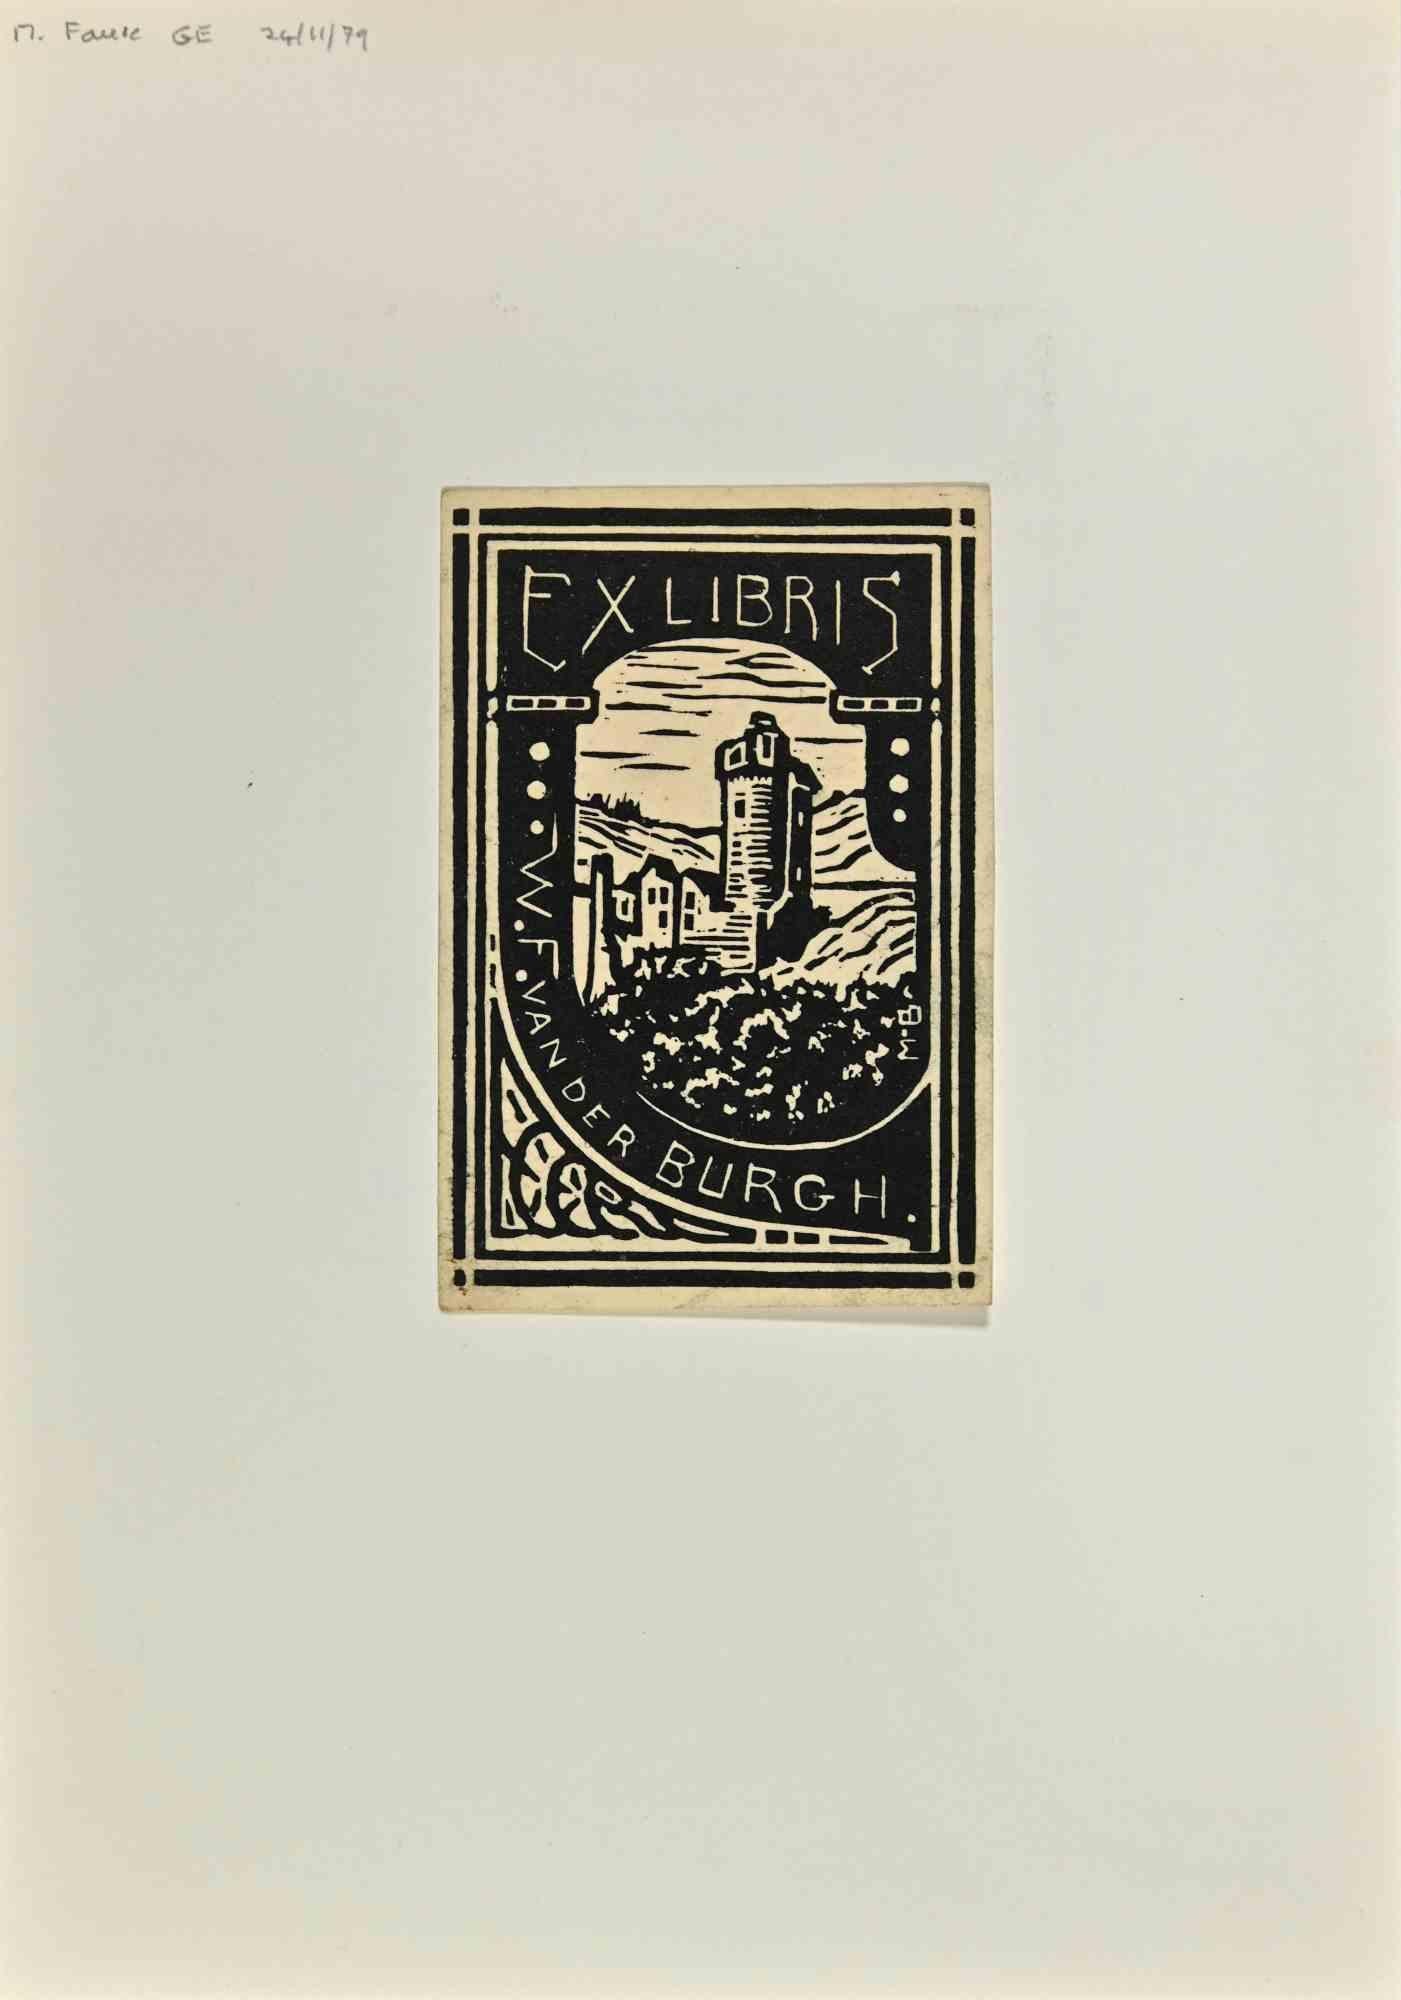  Ex Libris - Burgh - Gravure sur bois - Milieu du 20e siècle - Art de Unknown